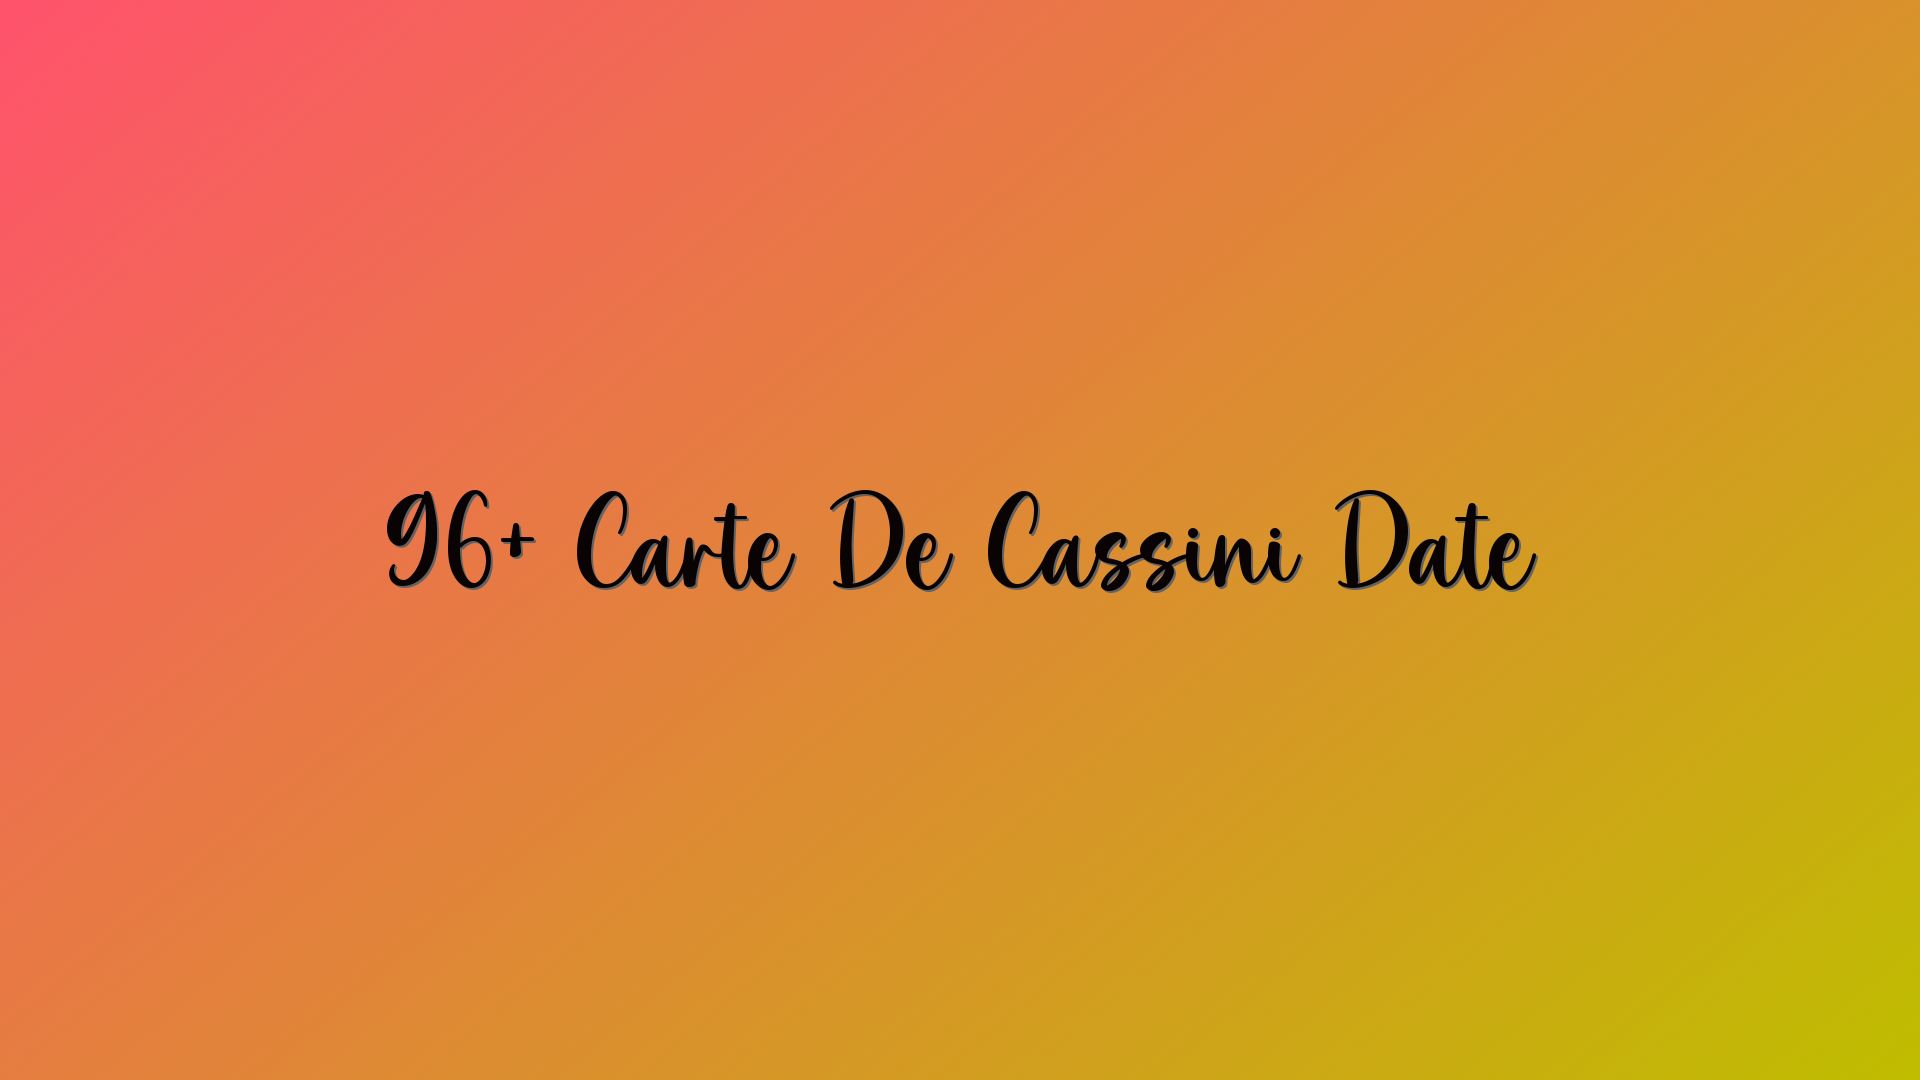 96+ Carte De Cassini Date